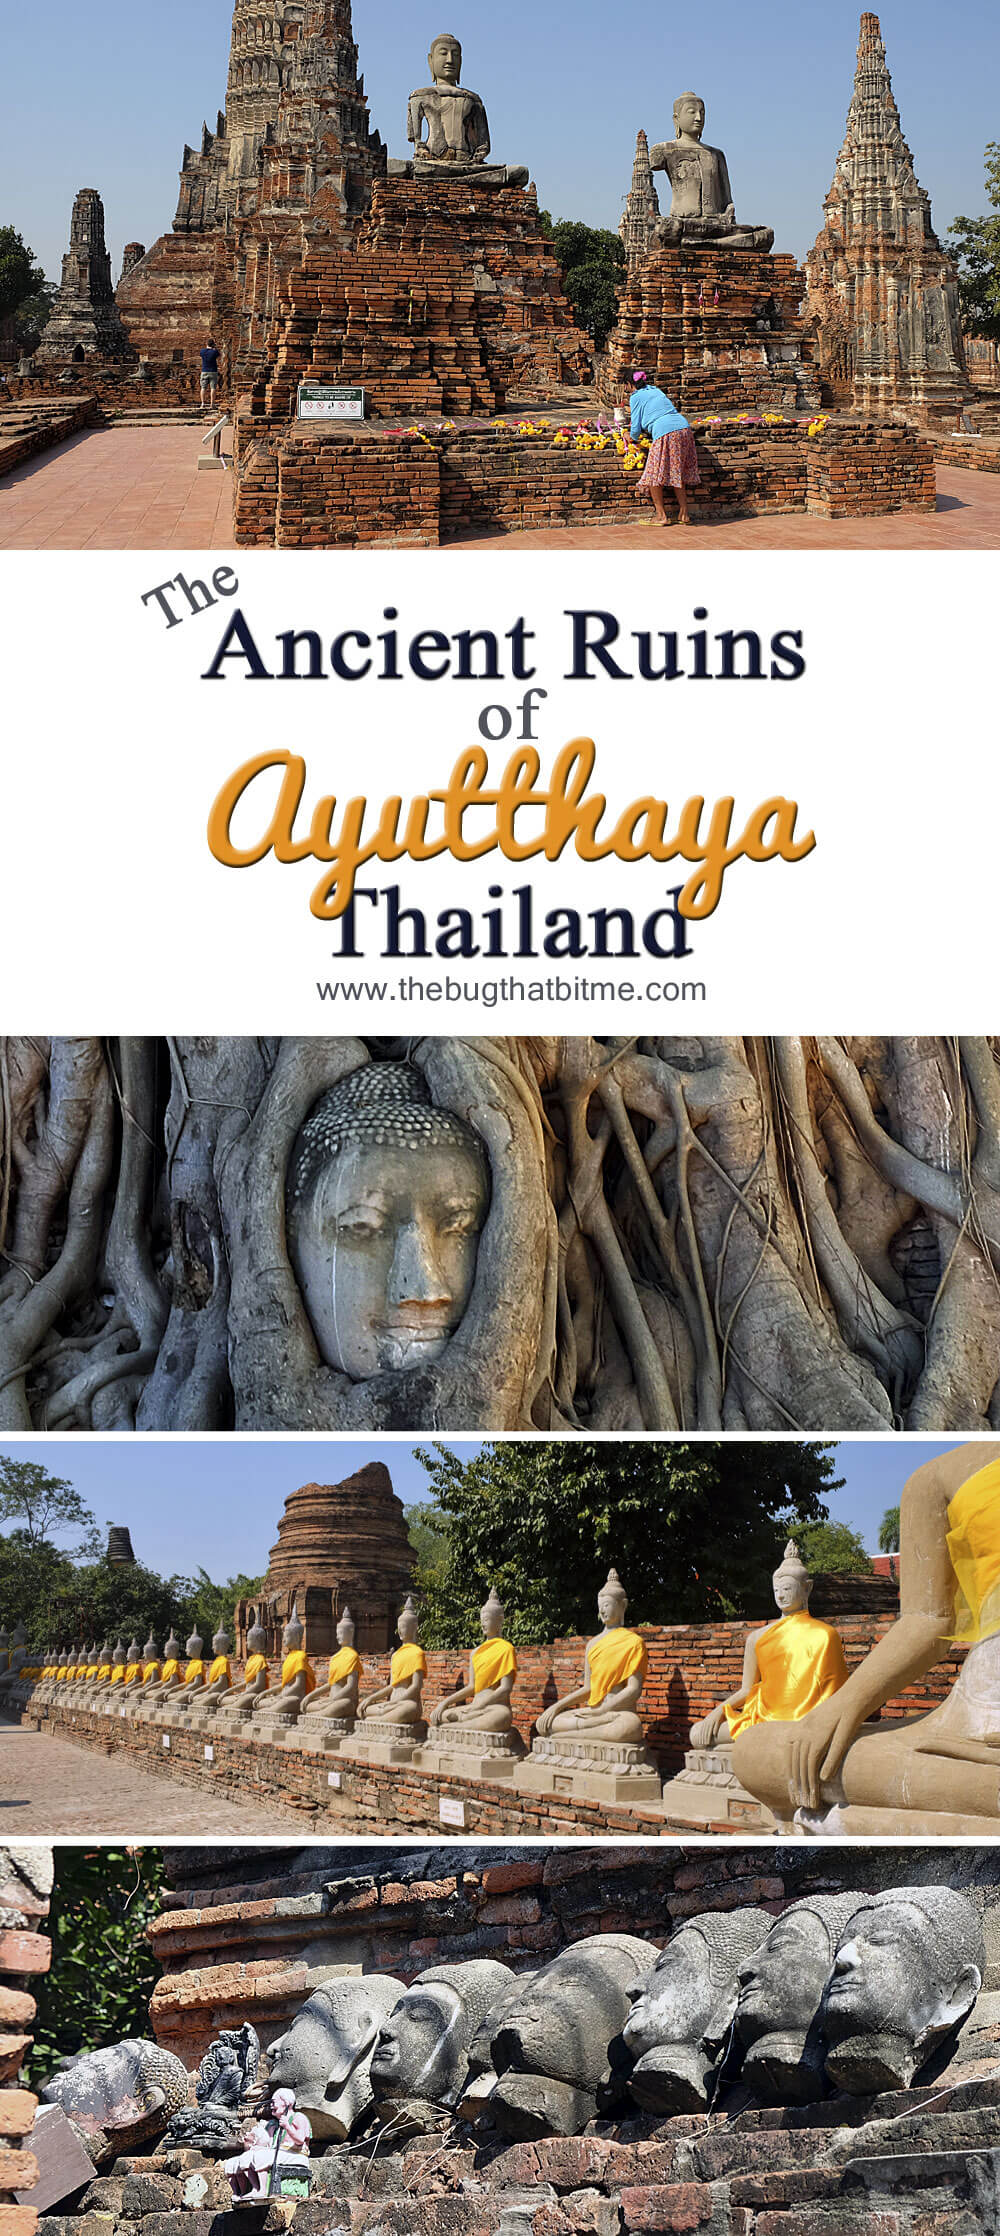 The Ancient Ruins of Ayutthaya, Thailand